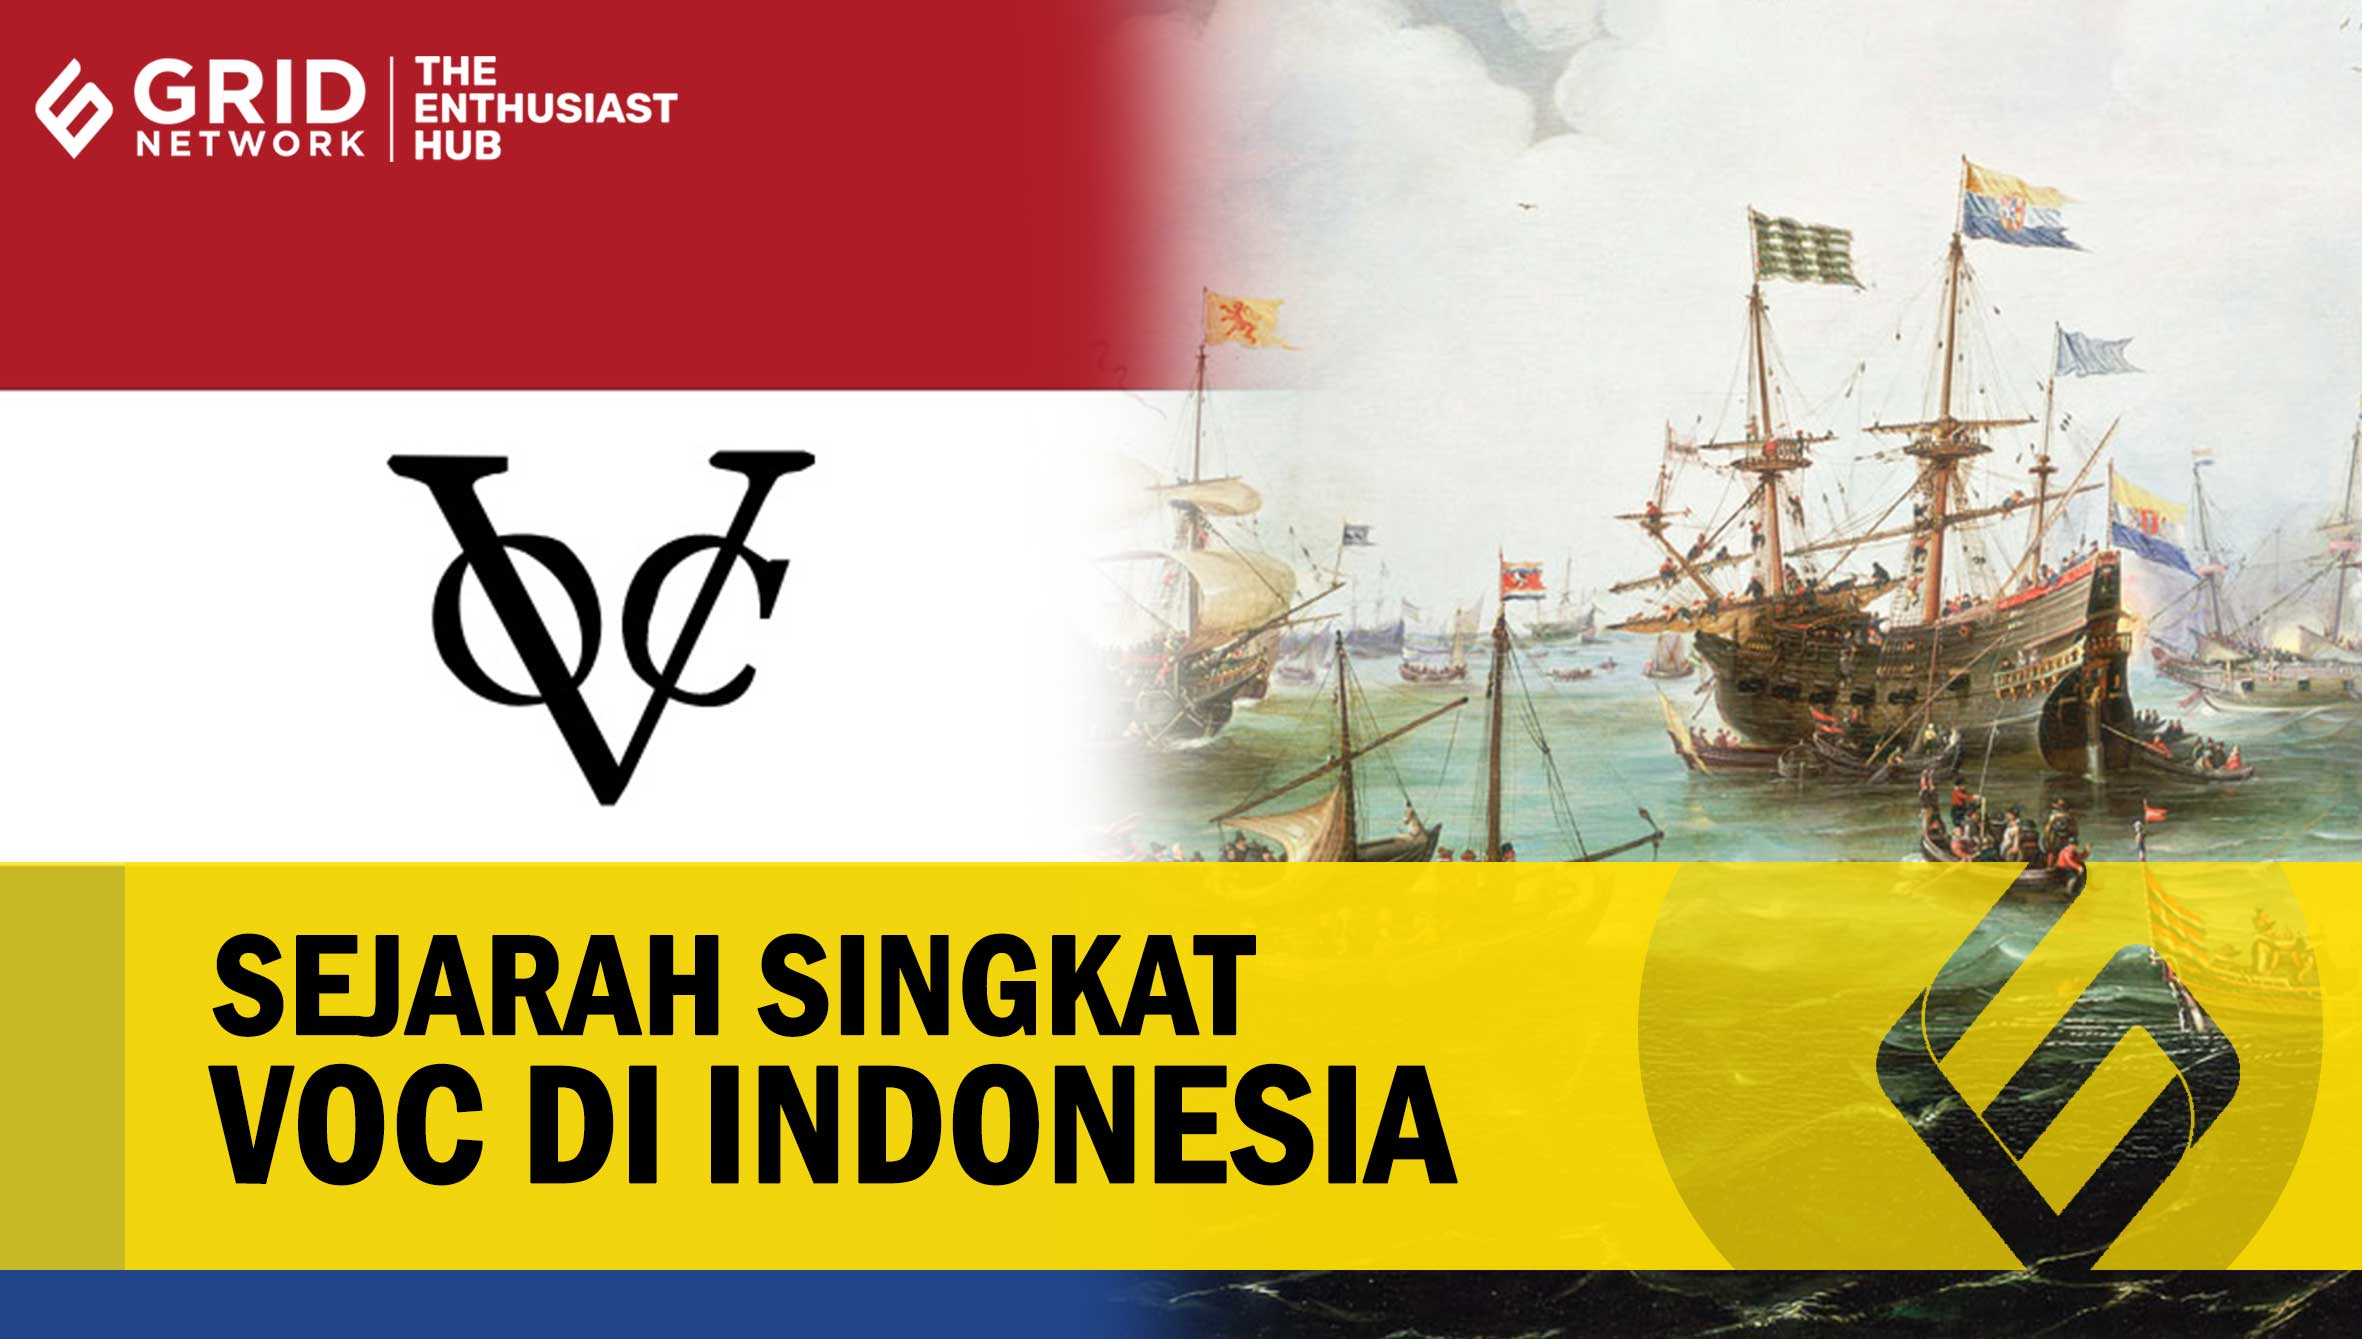 Sejarah Singkat VOC pada Masa Penjajahan Belanda di Indonesia